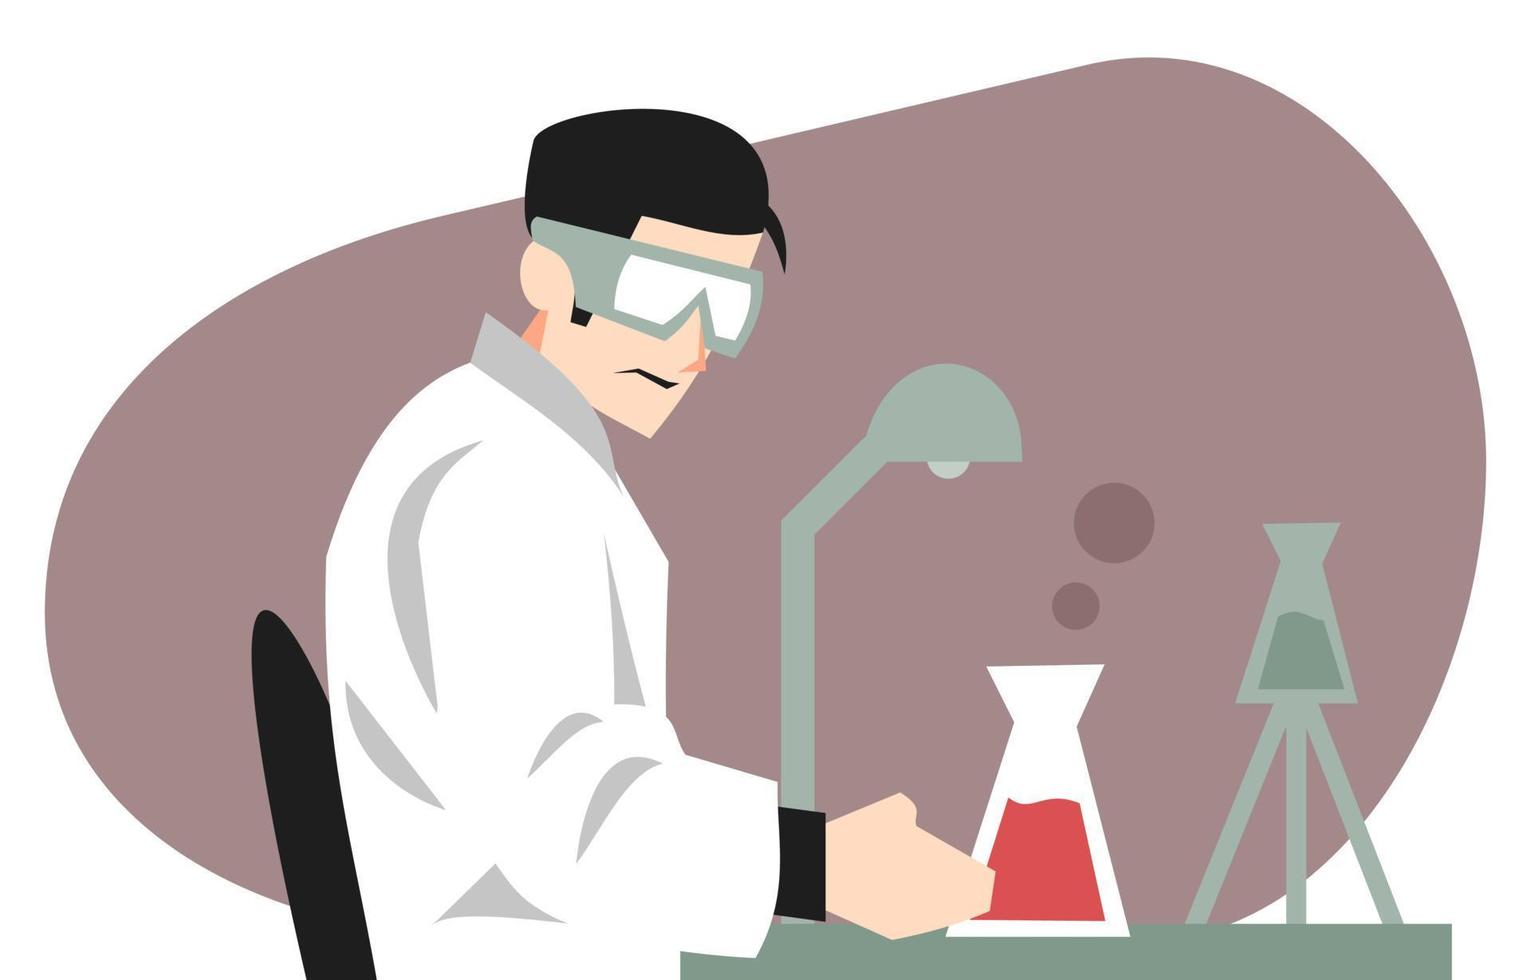 illustration des wissenschaftlers, der im labor arbeitet. Themen der Wissenschaft, Arbeit, Experimente, Medizin, Pharmazie, Schöpfung usw. flacher Vektor